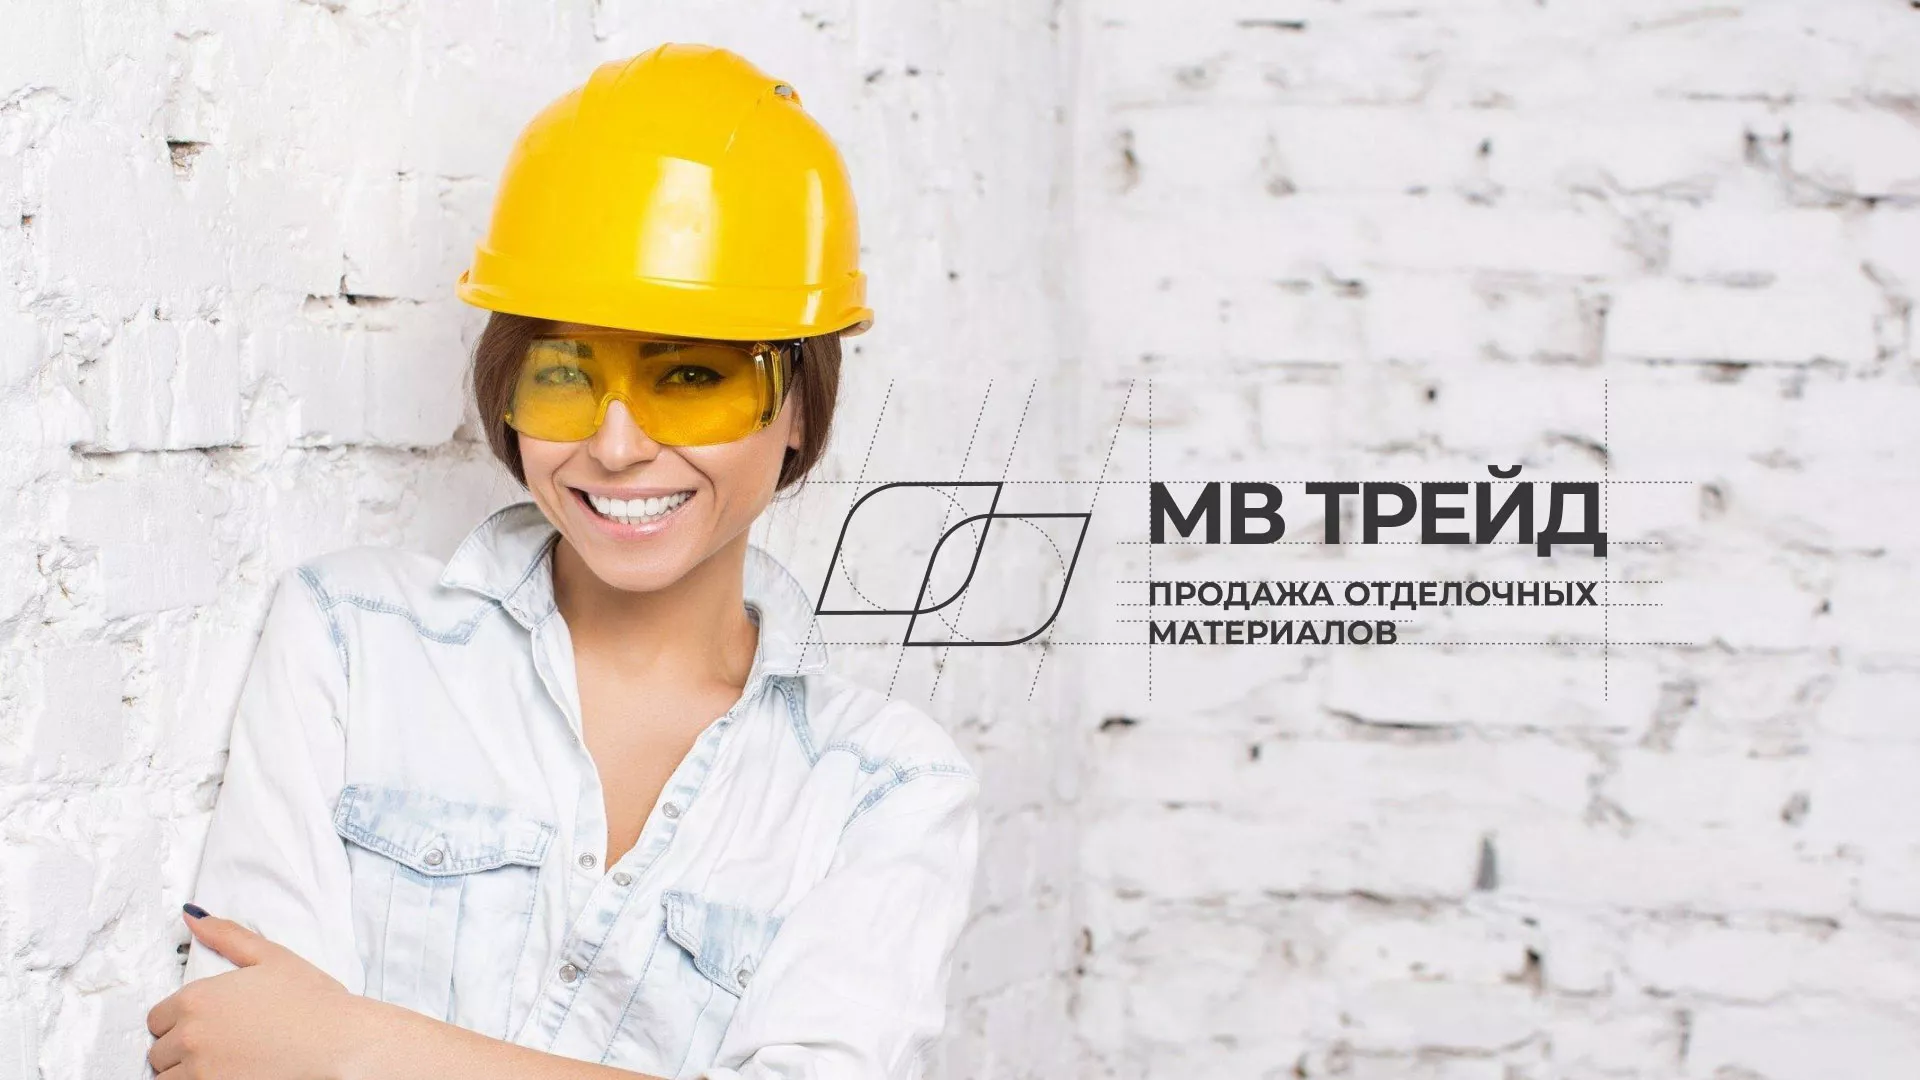 Разработка логотипа и сайта компании «МВ Трейд» в Ладушкине